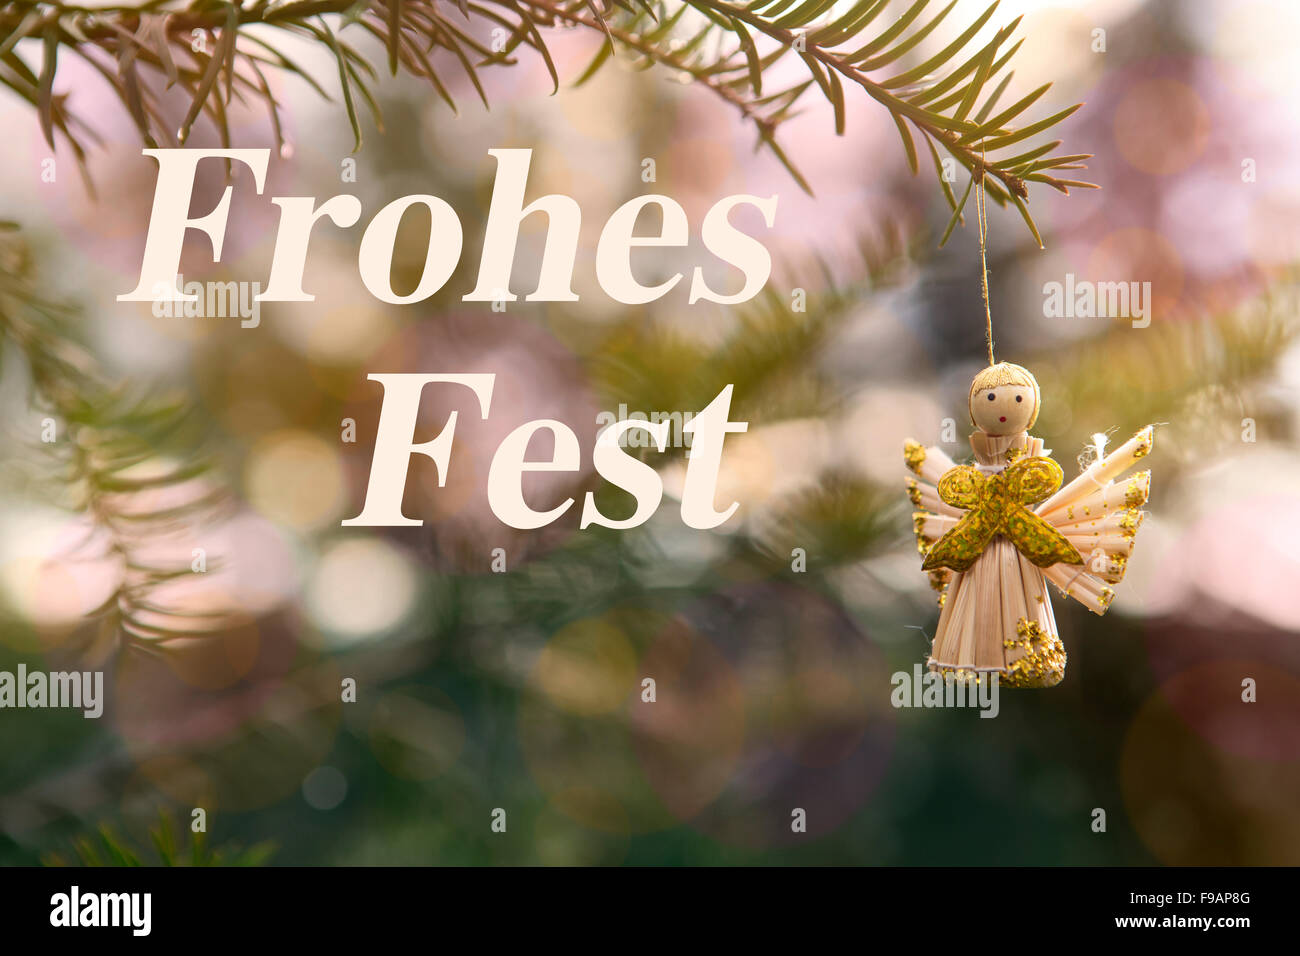 Paja dorado ángel colgando de una rama con palabras en alemán "Frohes Fest"  (Feliz Navidad Fotografía de stock - Alamy